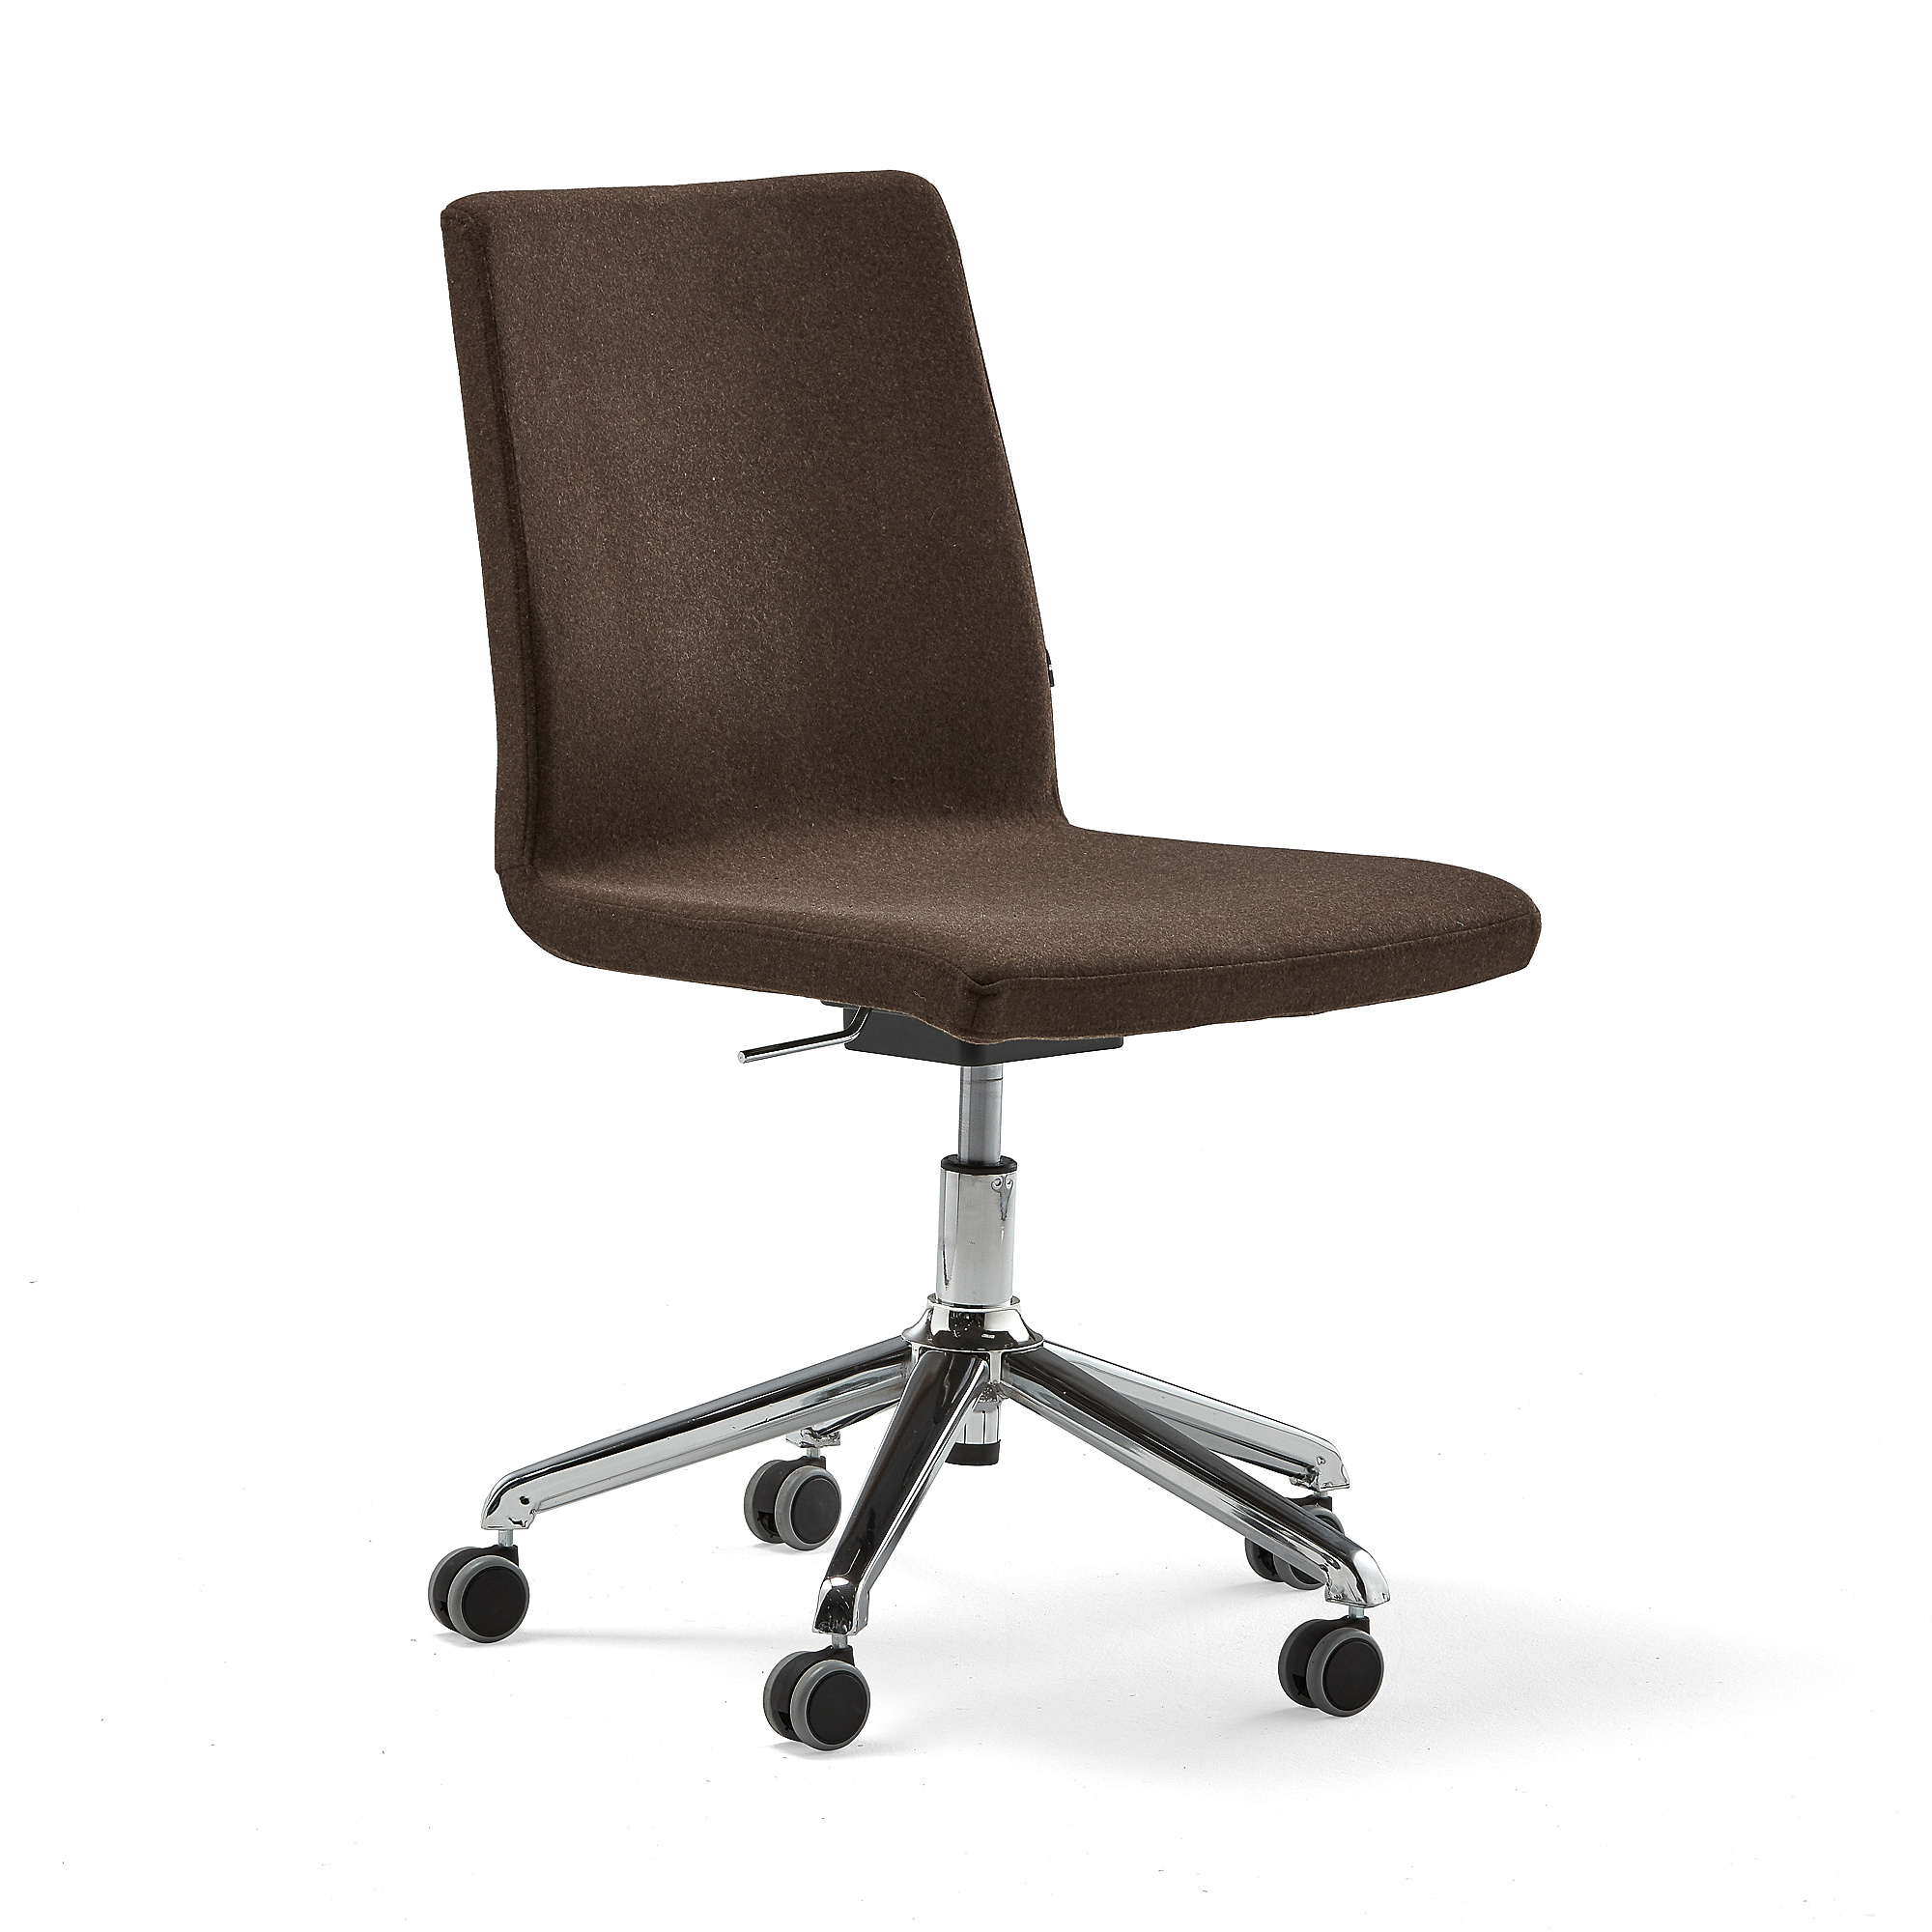 Konferenčná stolička PERRY, s aktívnym sedadlom, hnedé čalúnenie